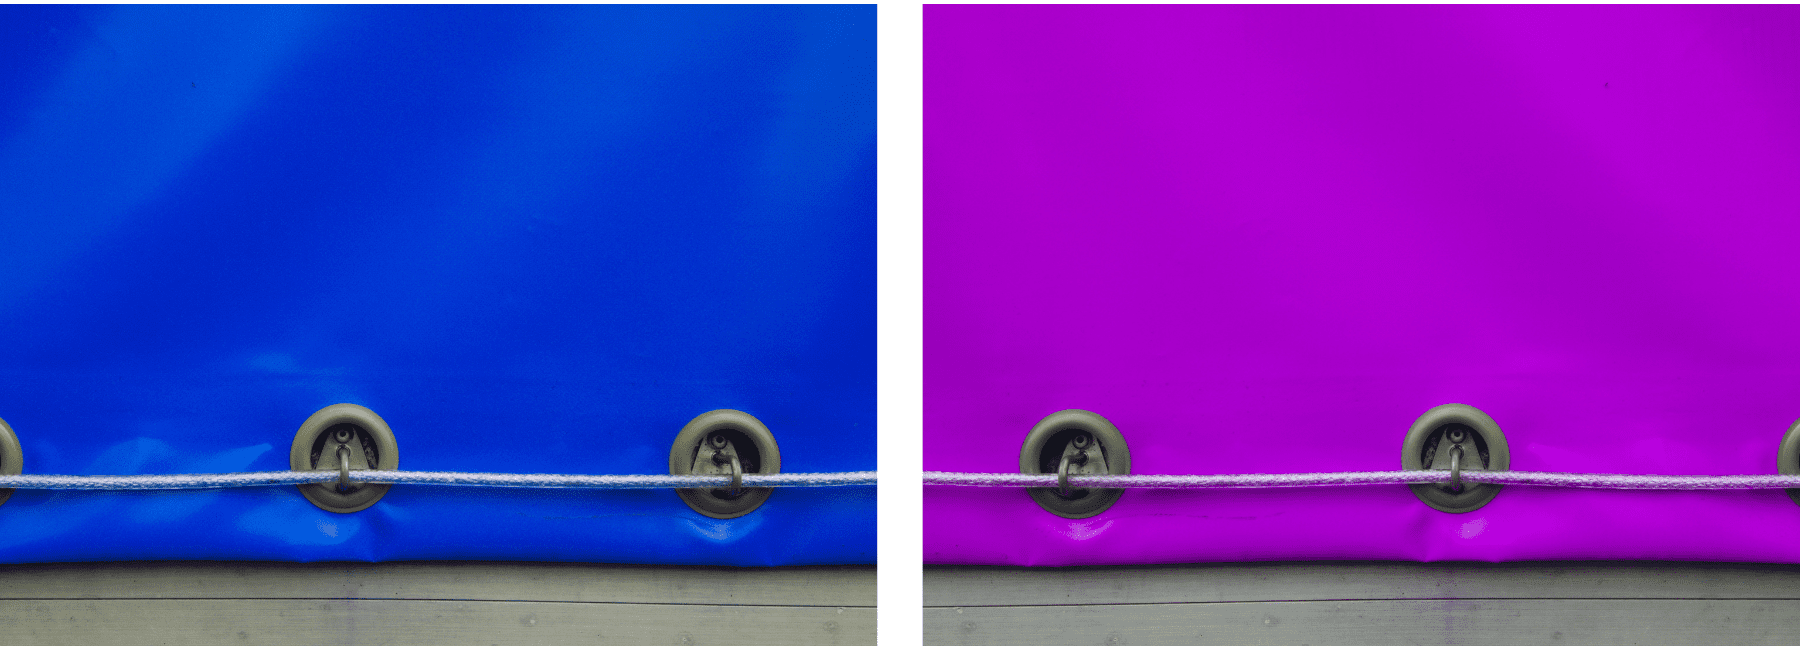 שתי תמונות של ברזנטים / שימשוניות בצבע כחול וסגול